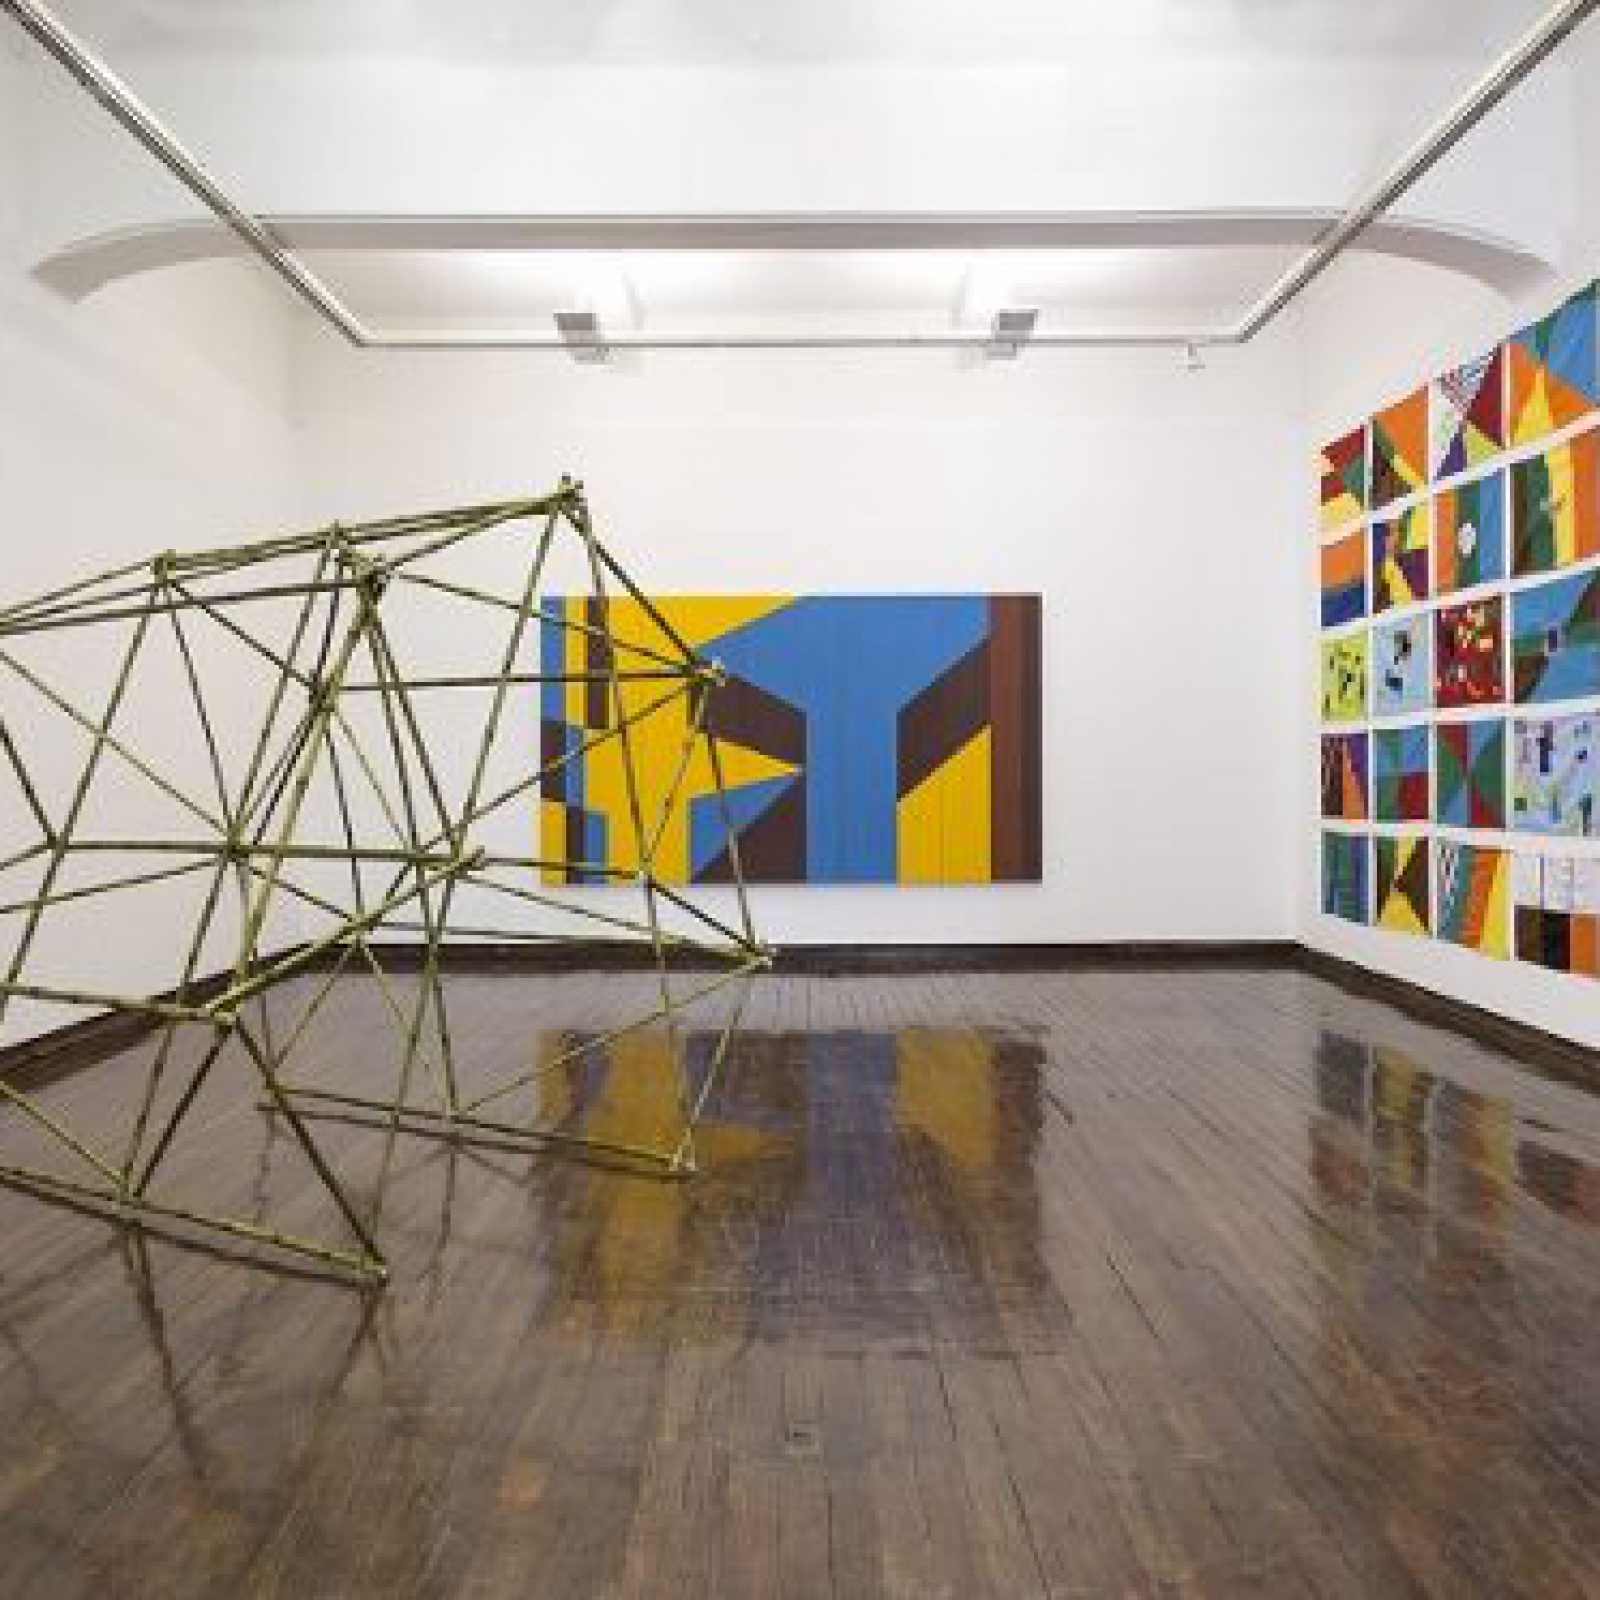 Vista de la exposición "Acción Monumenta", del Colectivo de Arte MICH, en galería Macchina, Santiago de Chile, 2017. Foto: Benjamín Matte